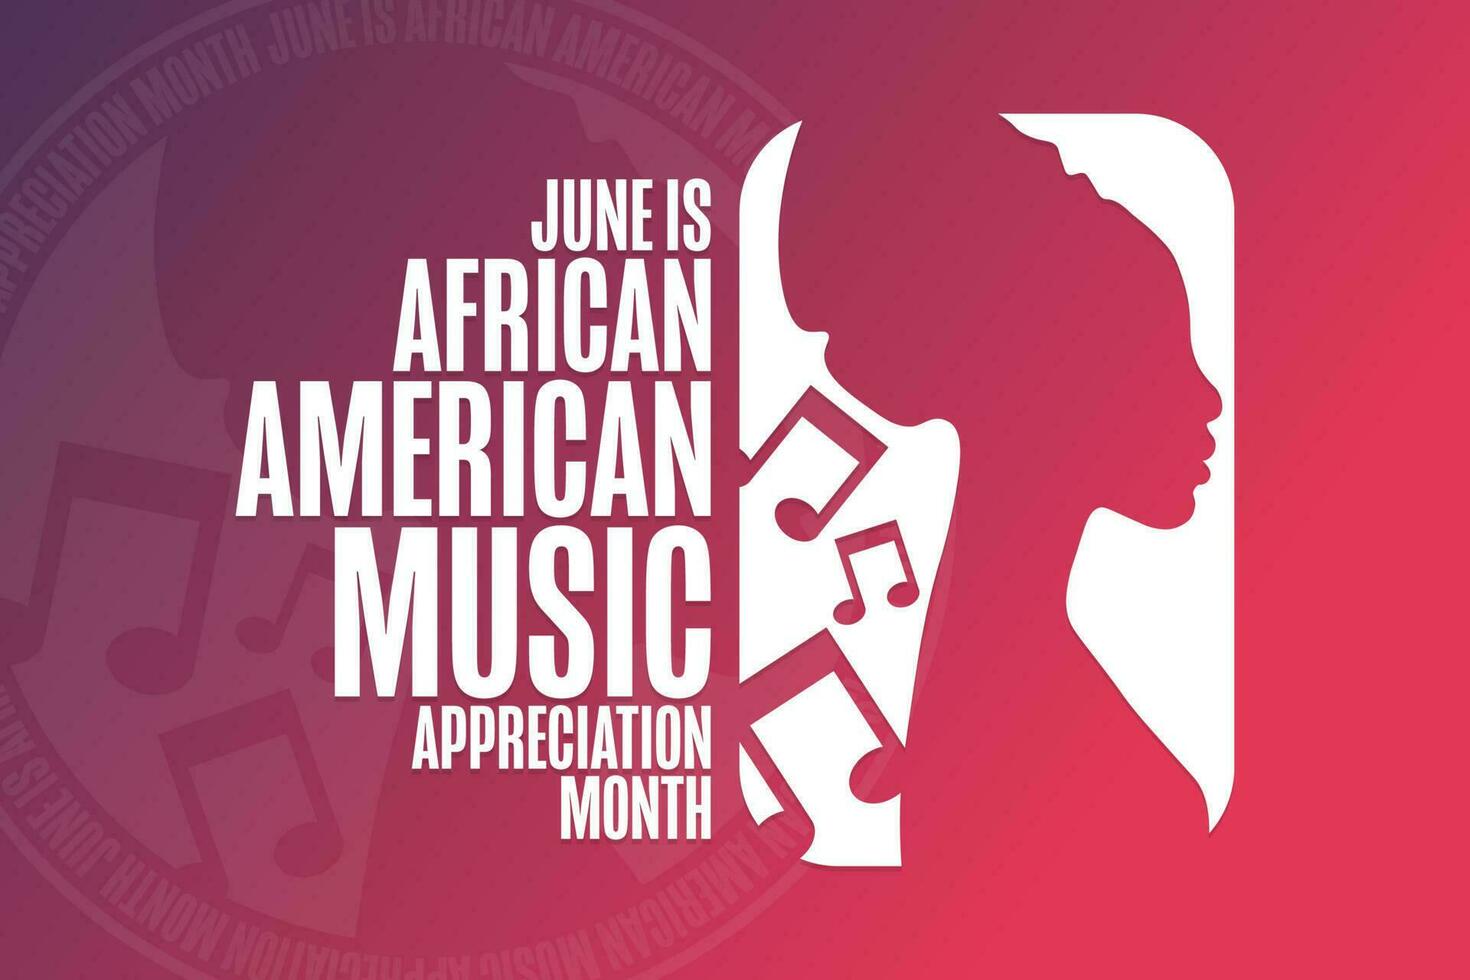 Junho é africano americano música apreciação mês. feriado conceito. modelo para fundo, bandeira, cartão, poster com texto inscrição. vetor eps10 ilustração.